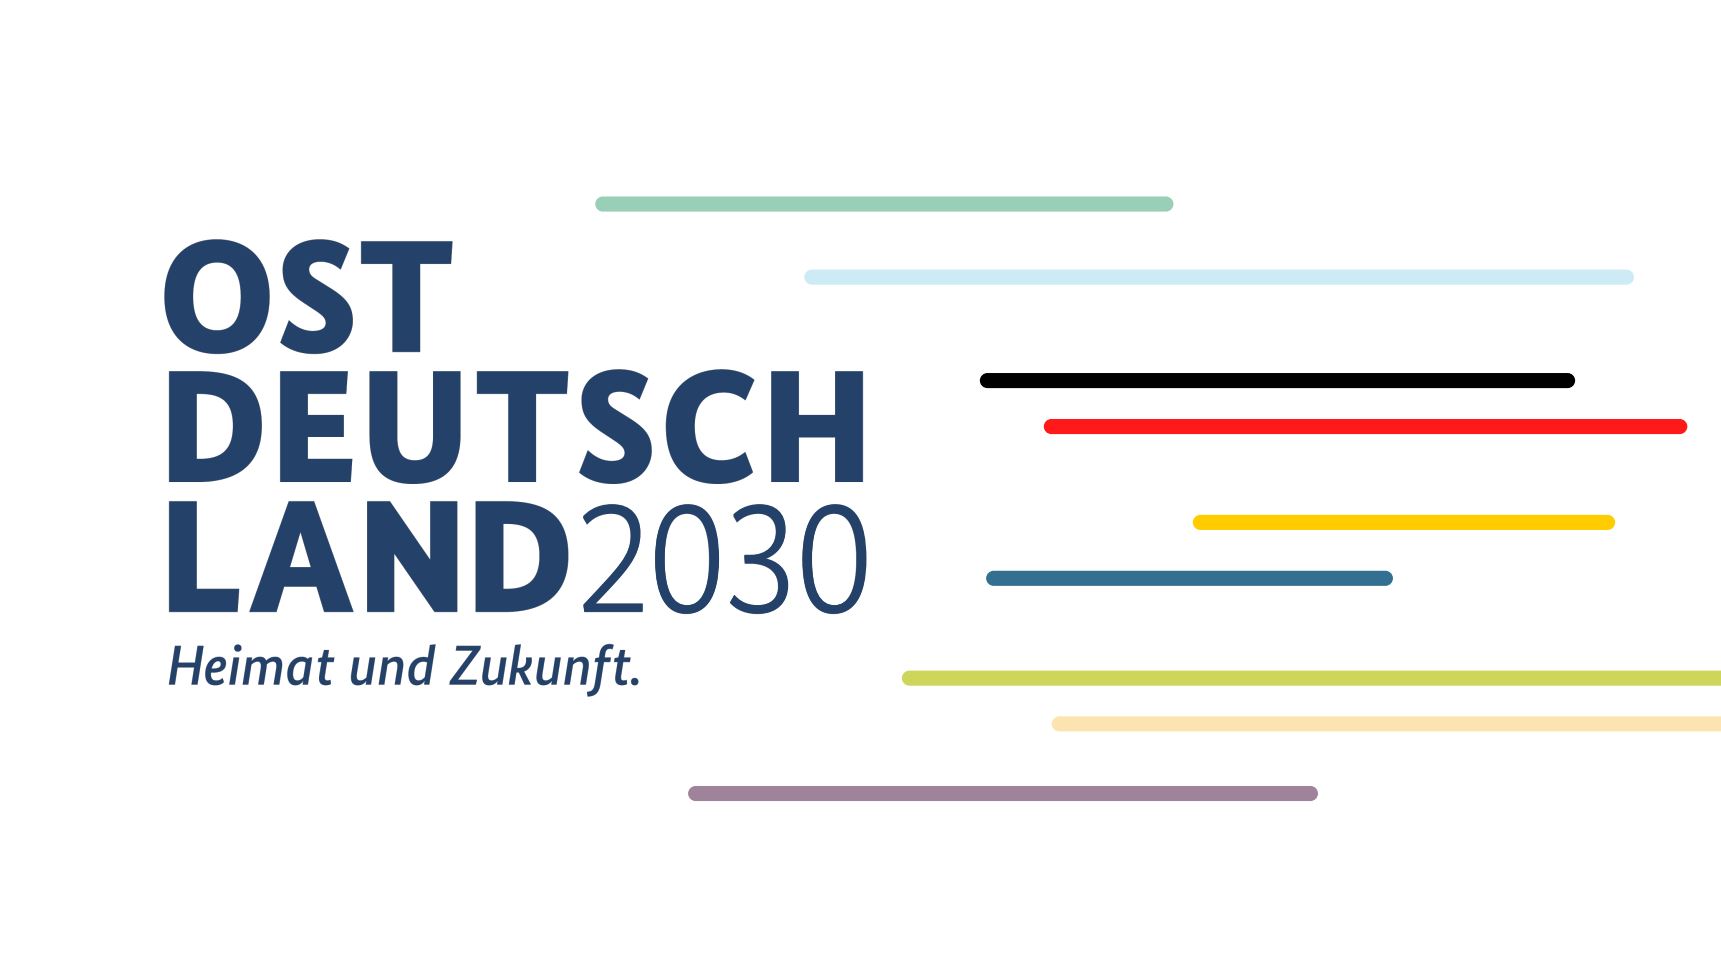 Ostdeutschland 2030